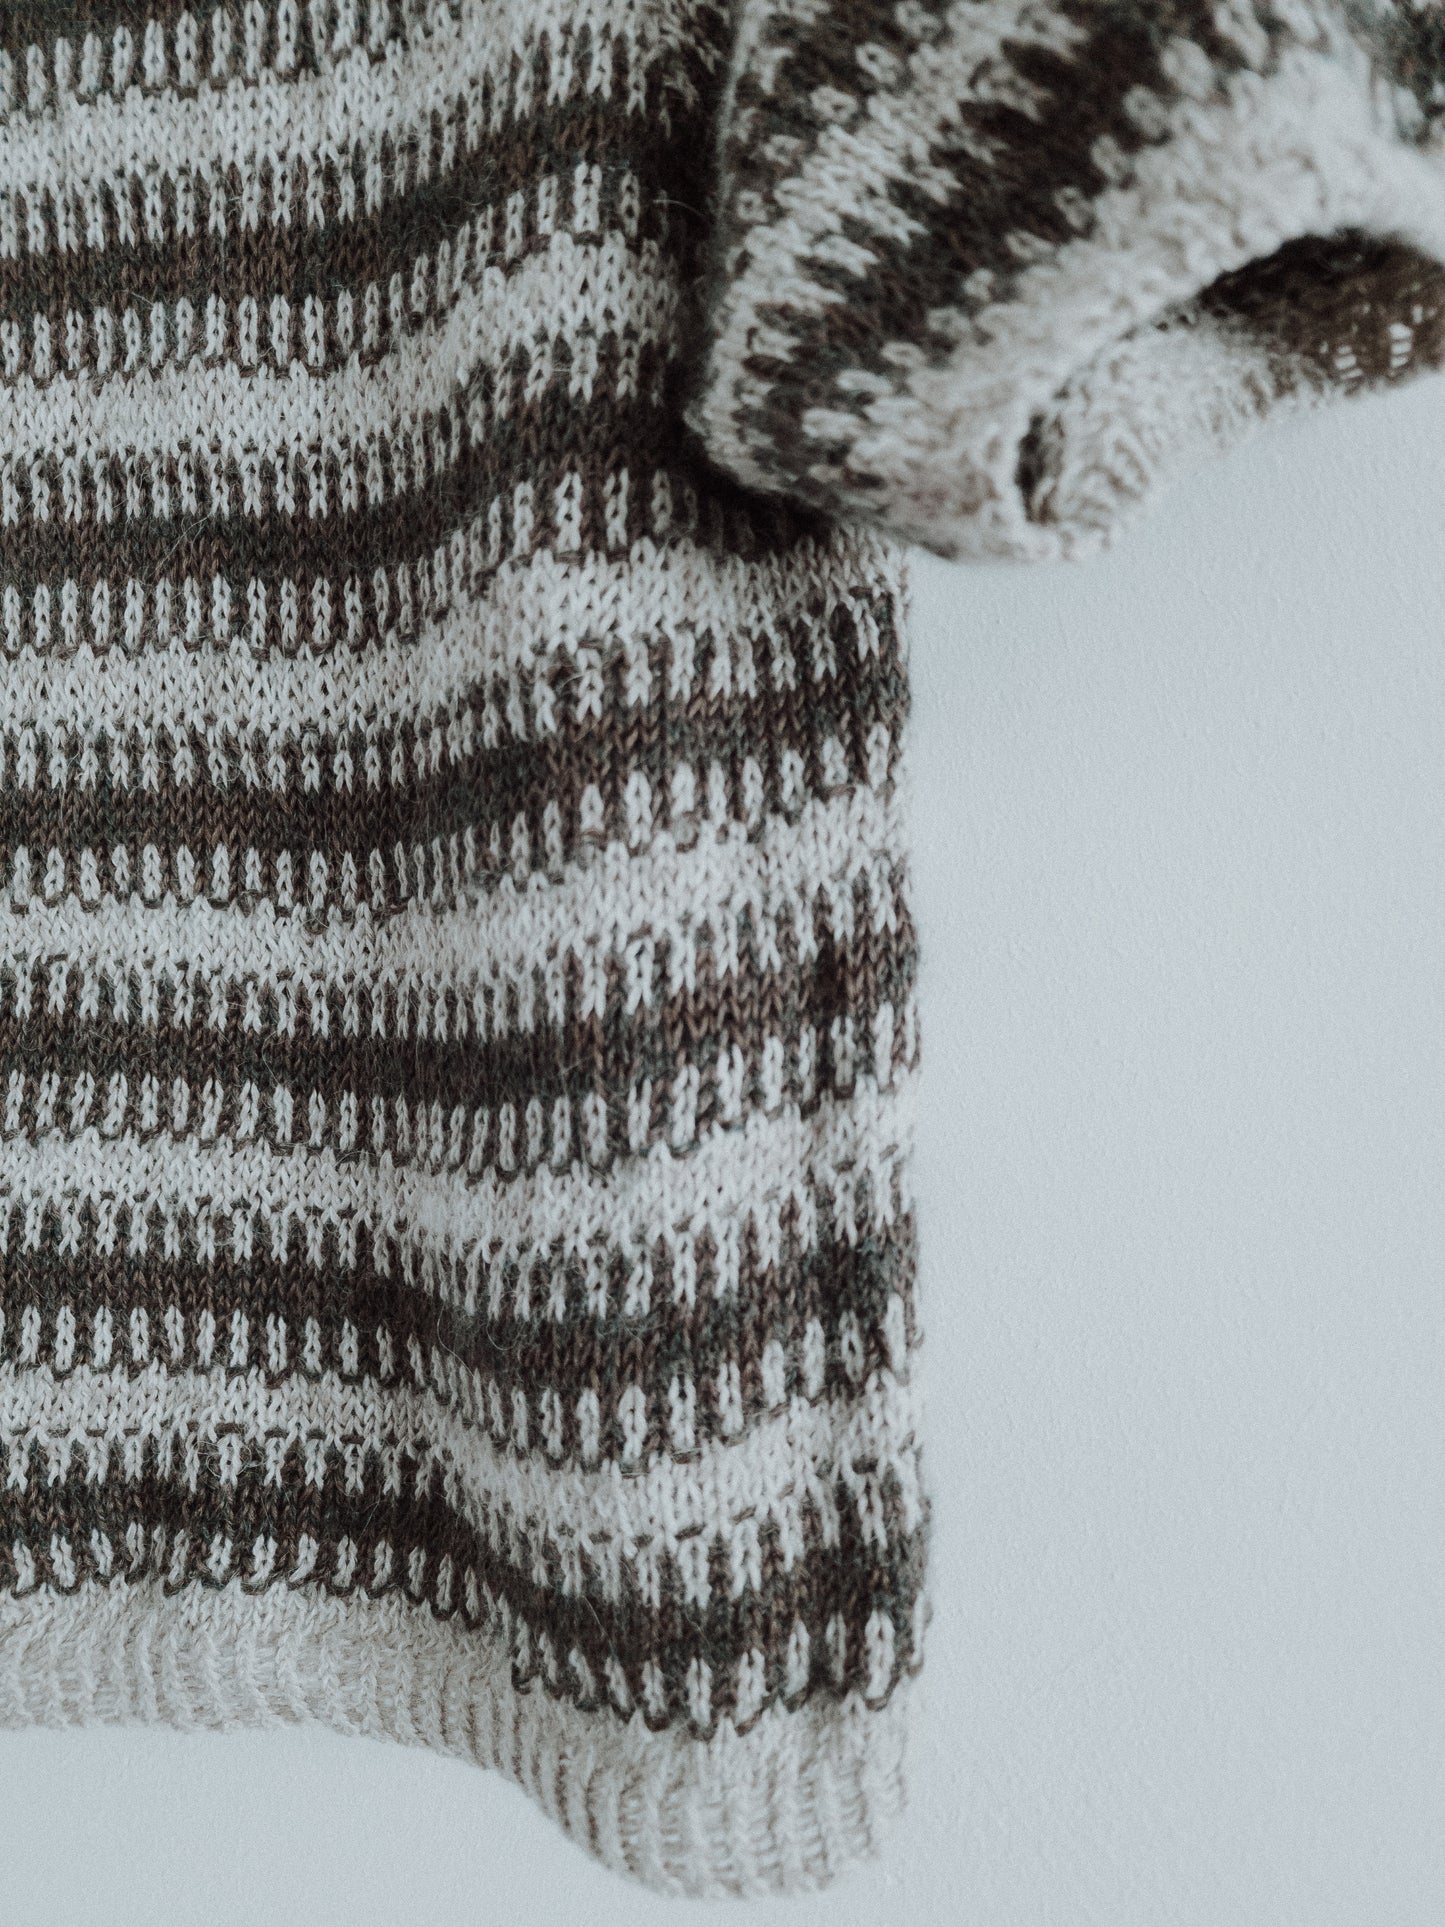 Bjørk Top - Knitting Pattern